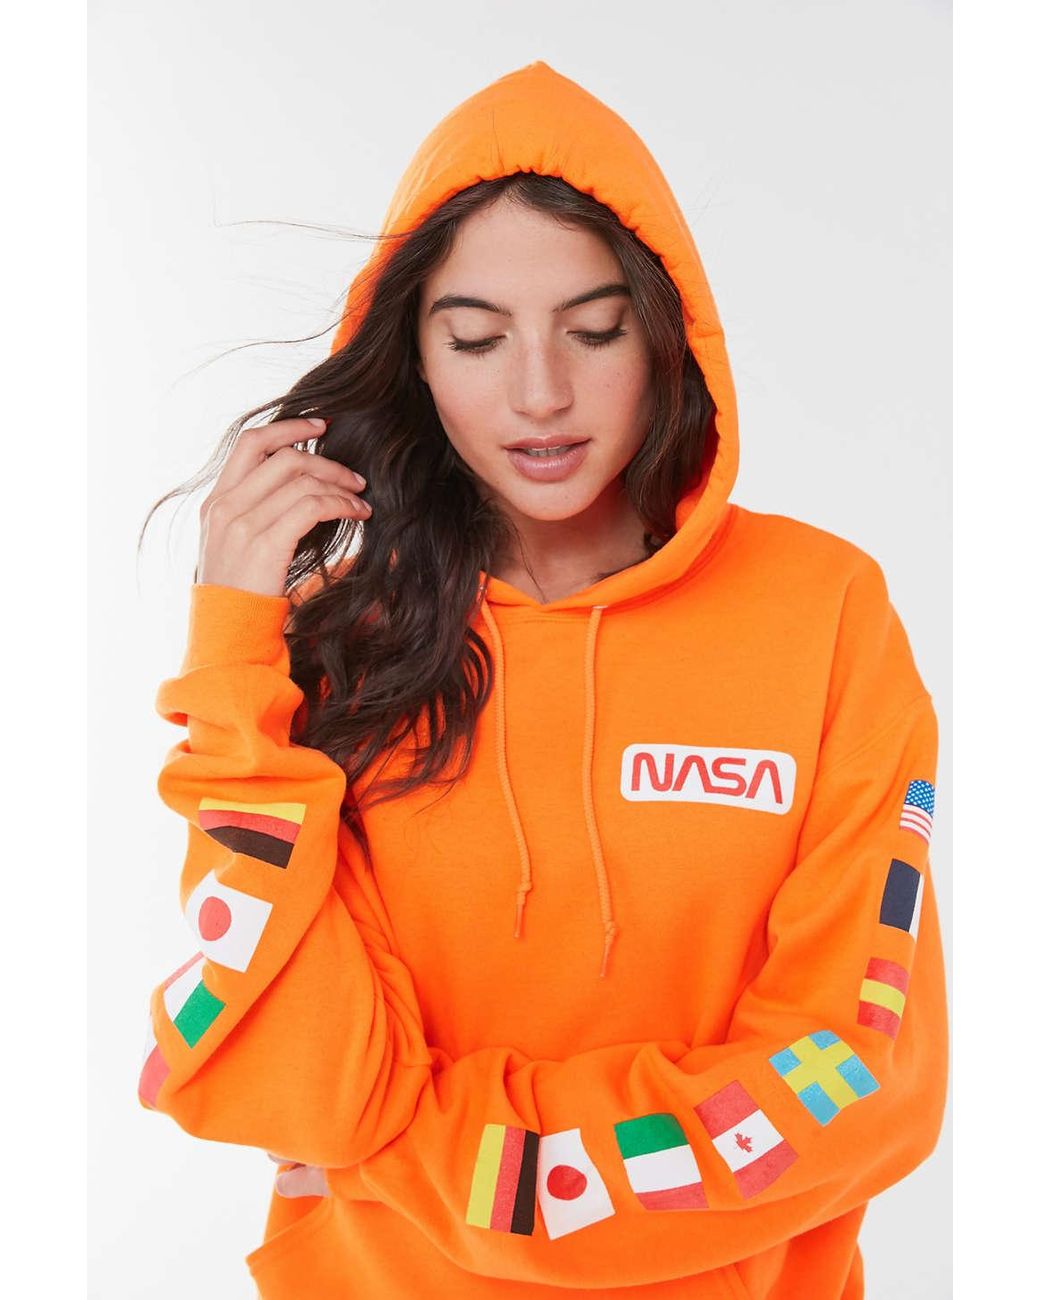 Urban Outfitters Nasa Astronaut Group 16 Hoodie Sweatshirt in Orange | Lyst